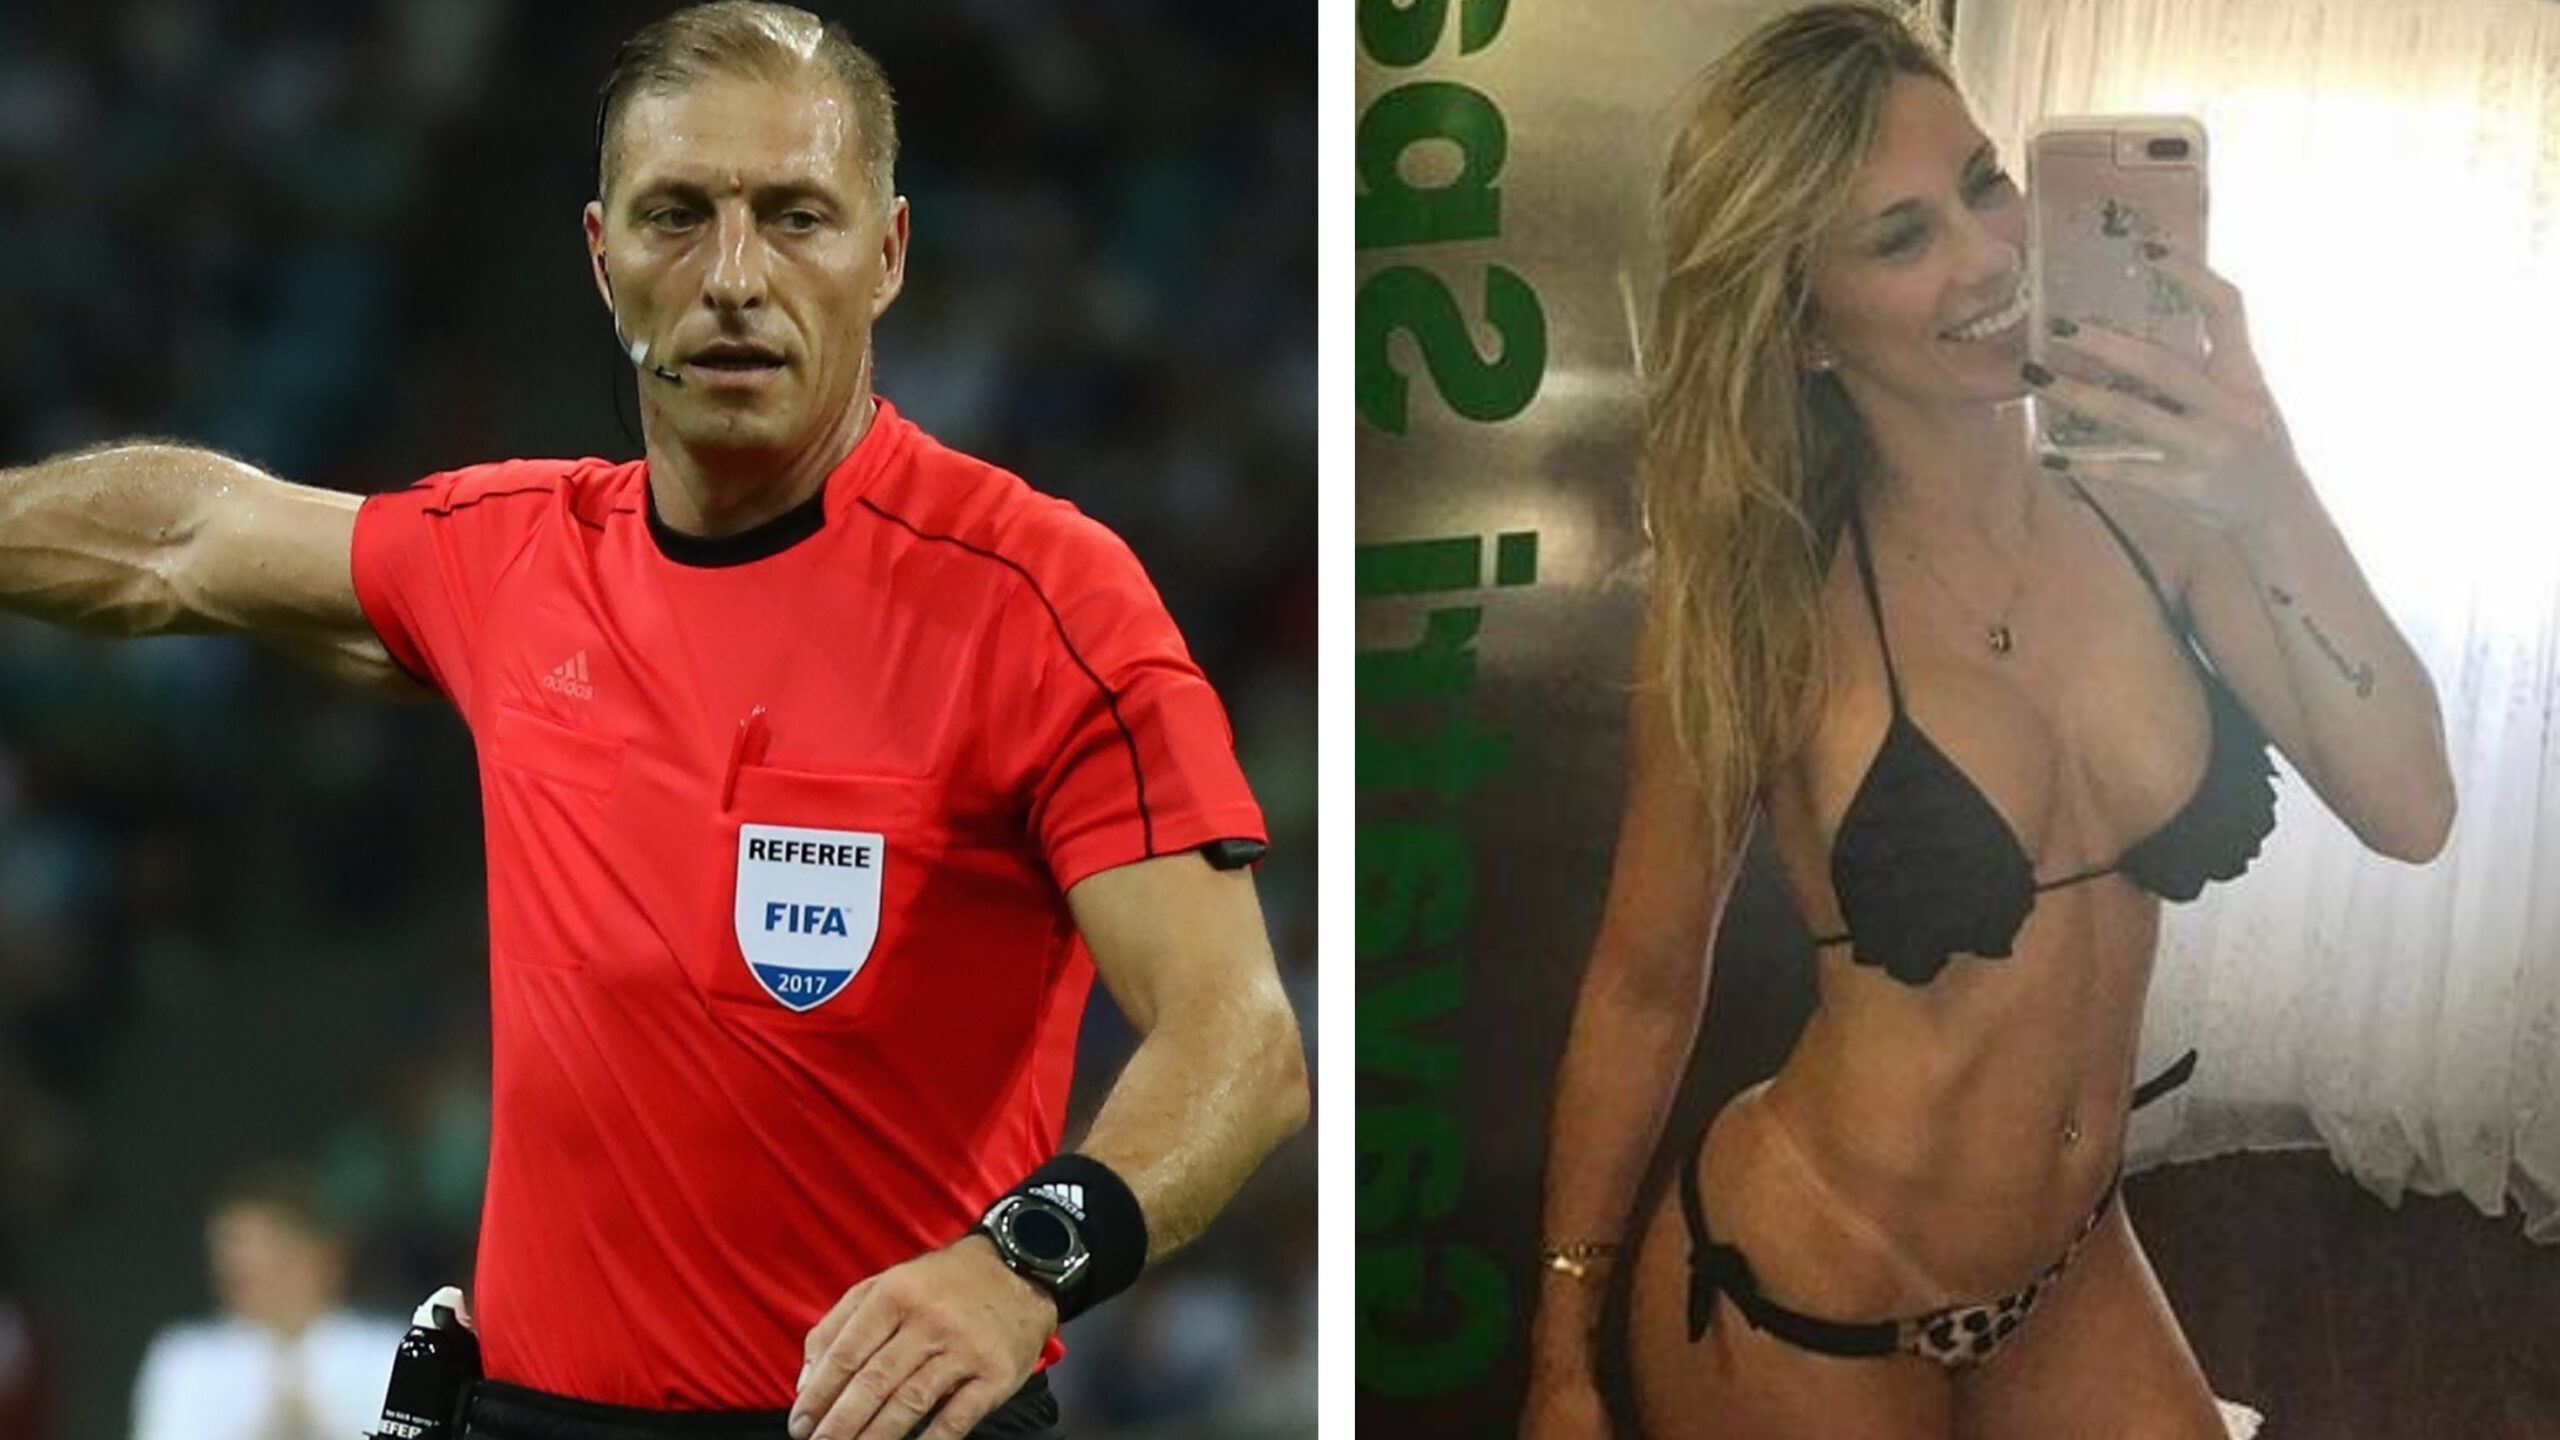 Esposa de Nestor Pitana, árbitro de final de Copa, chama atenção em plataforma adulta